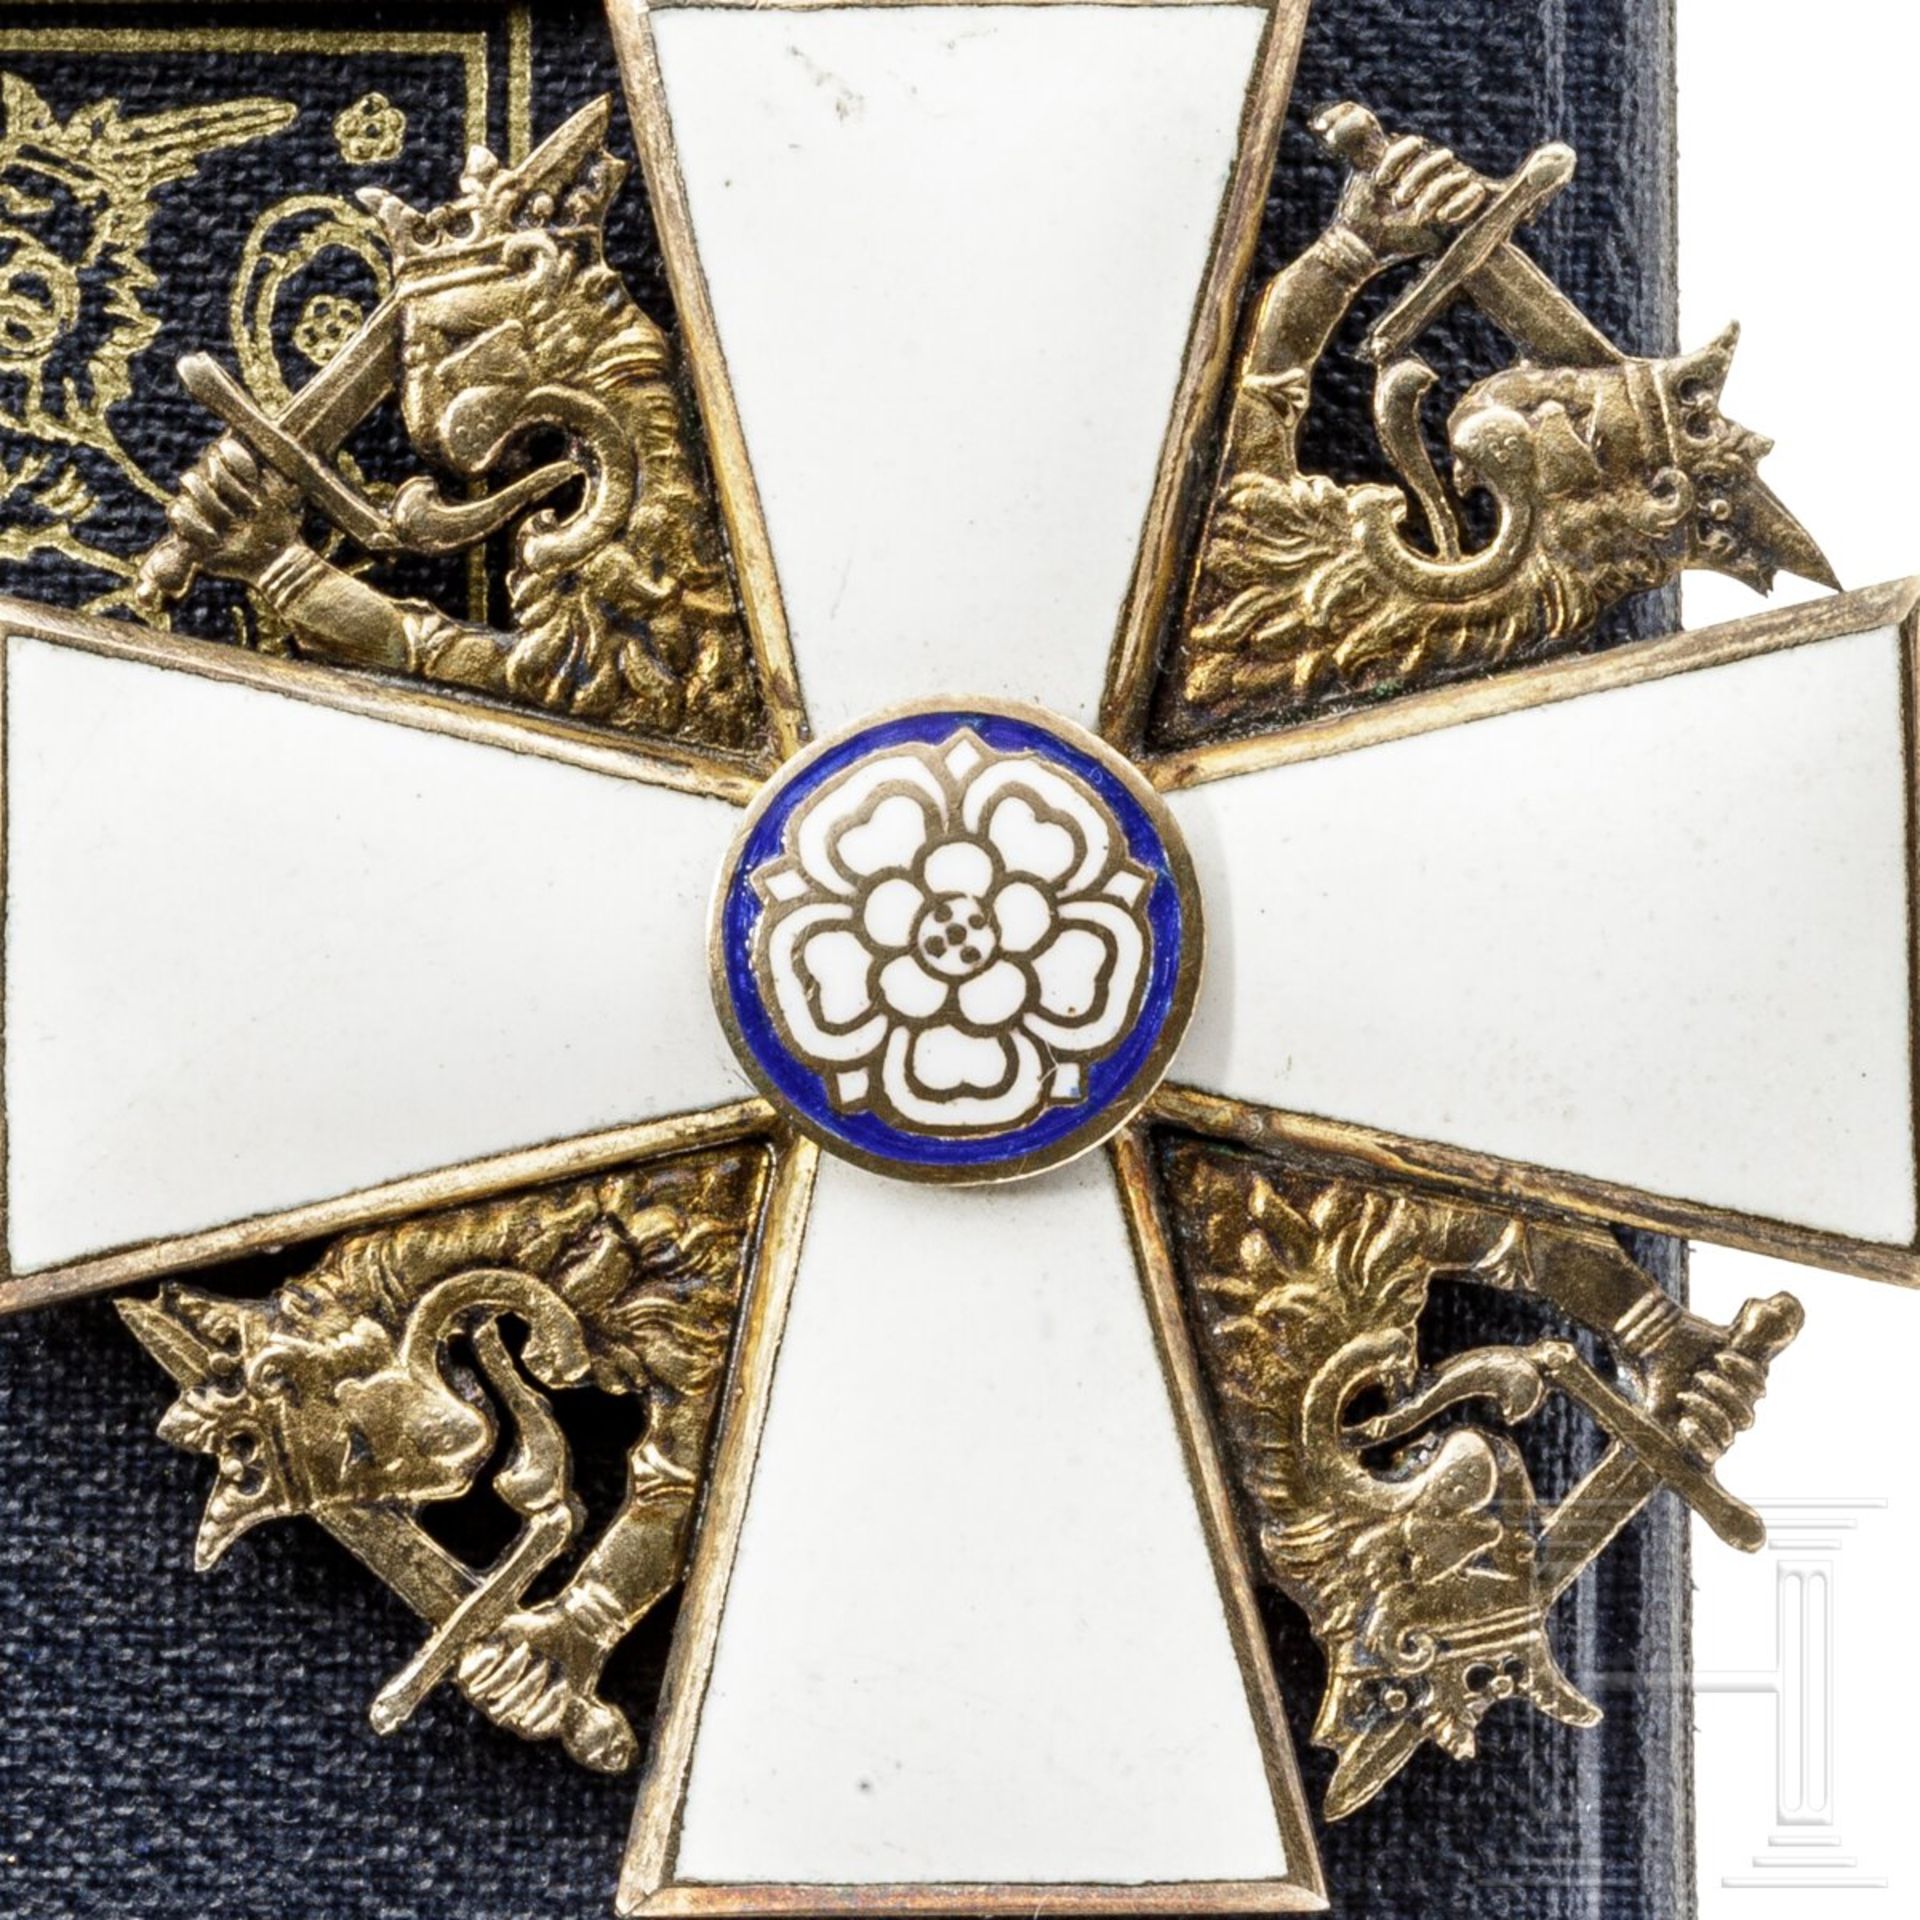 Finnischer Orden der Weißen Rose - Kommandeurskreuz - Image 6 of 6